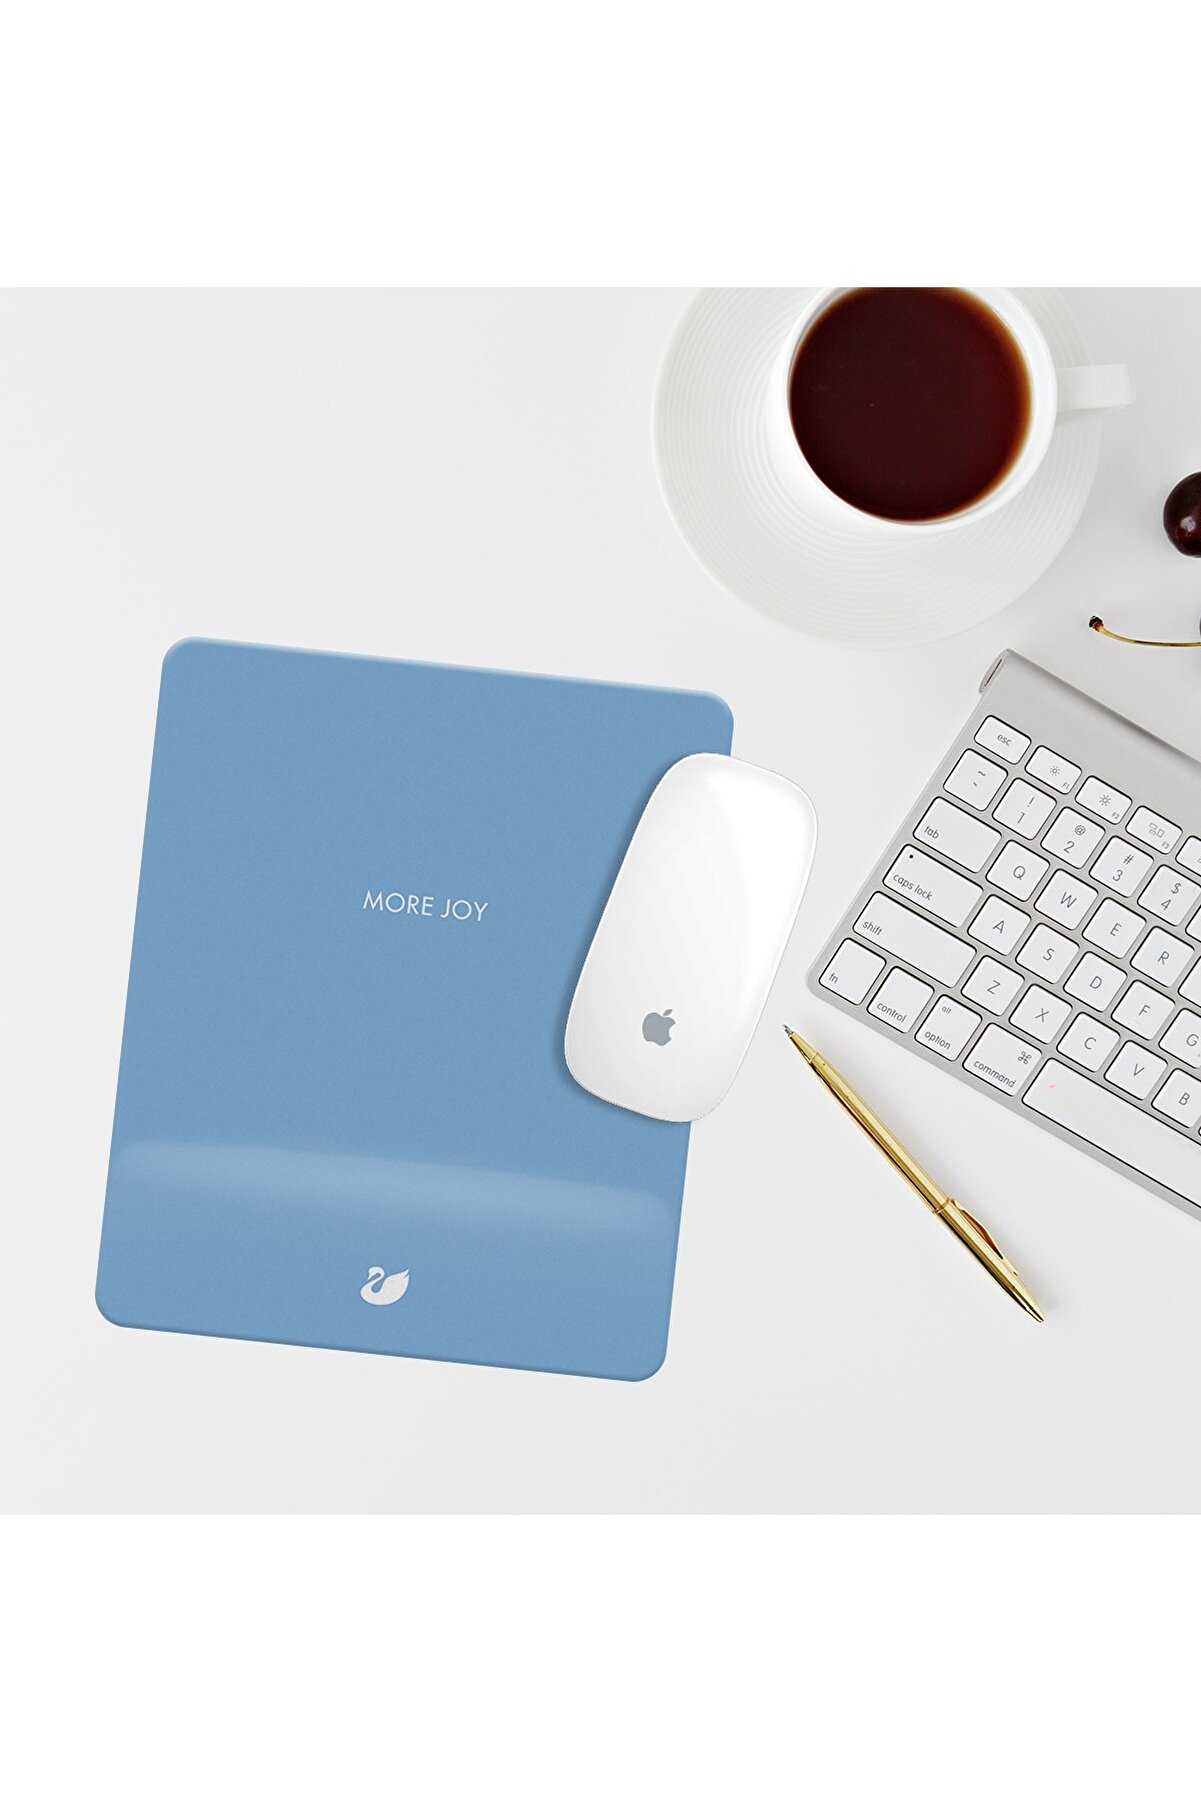 Özer Store Mavi More Joy Yazılı Bilek Destekli Dikdörtgen Mouse Pad Mouse Altlığı